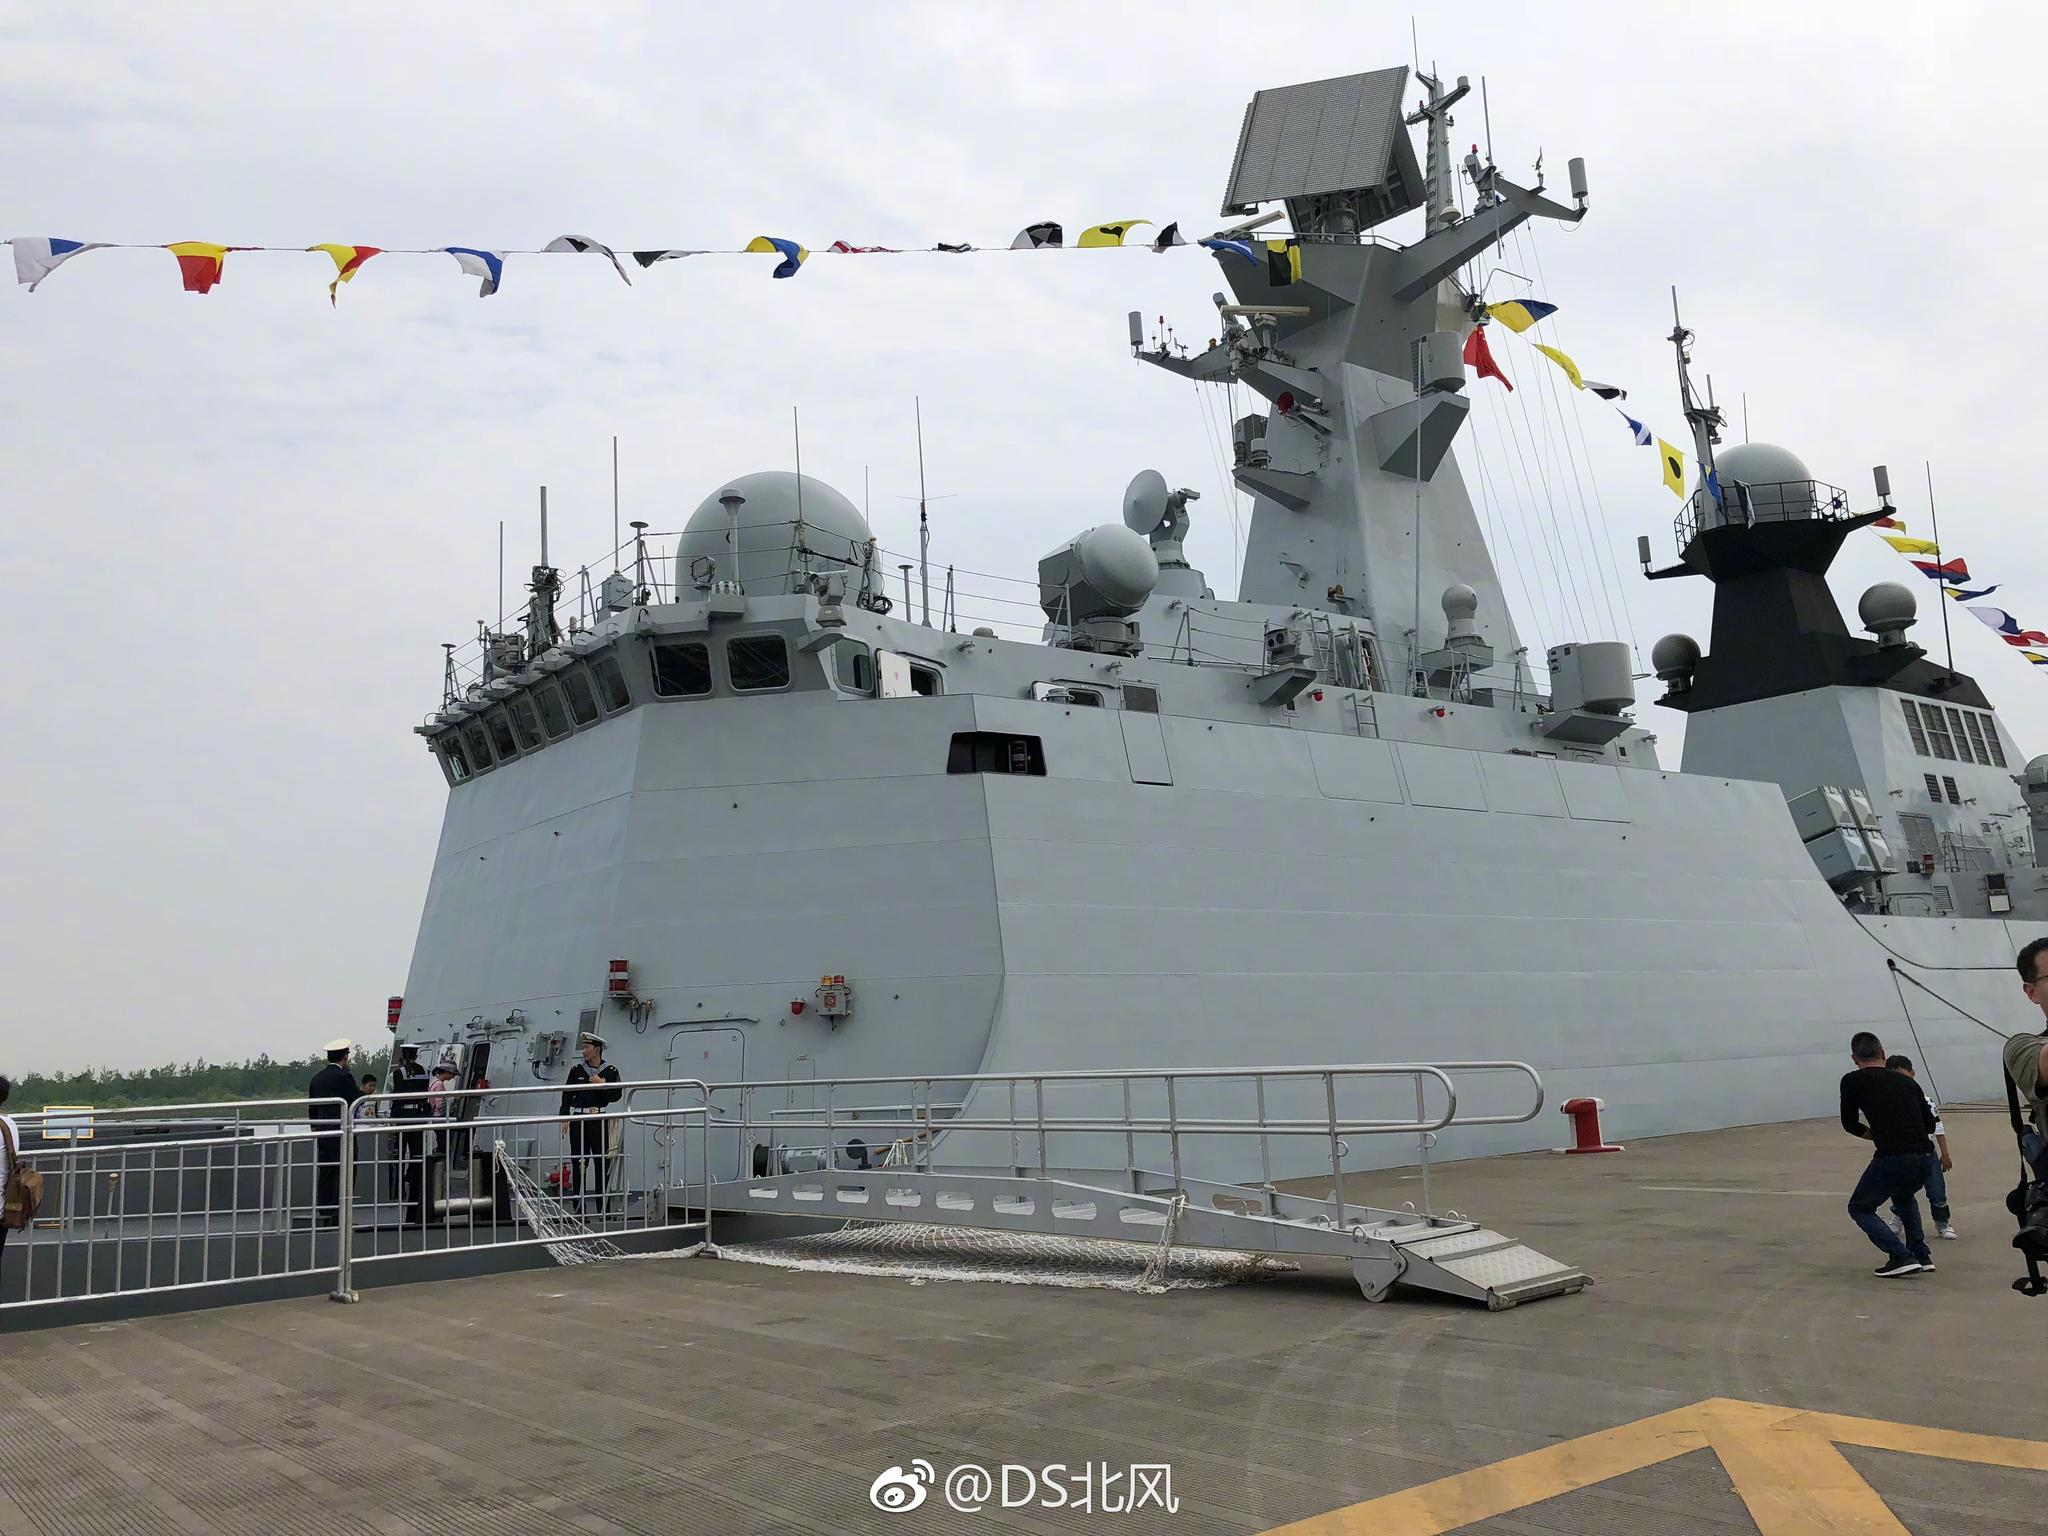 扬州号导弹护卫舰(舷号 578)为054A型导弹护卫舰